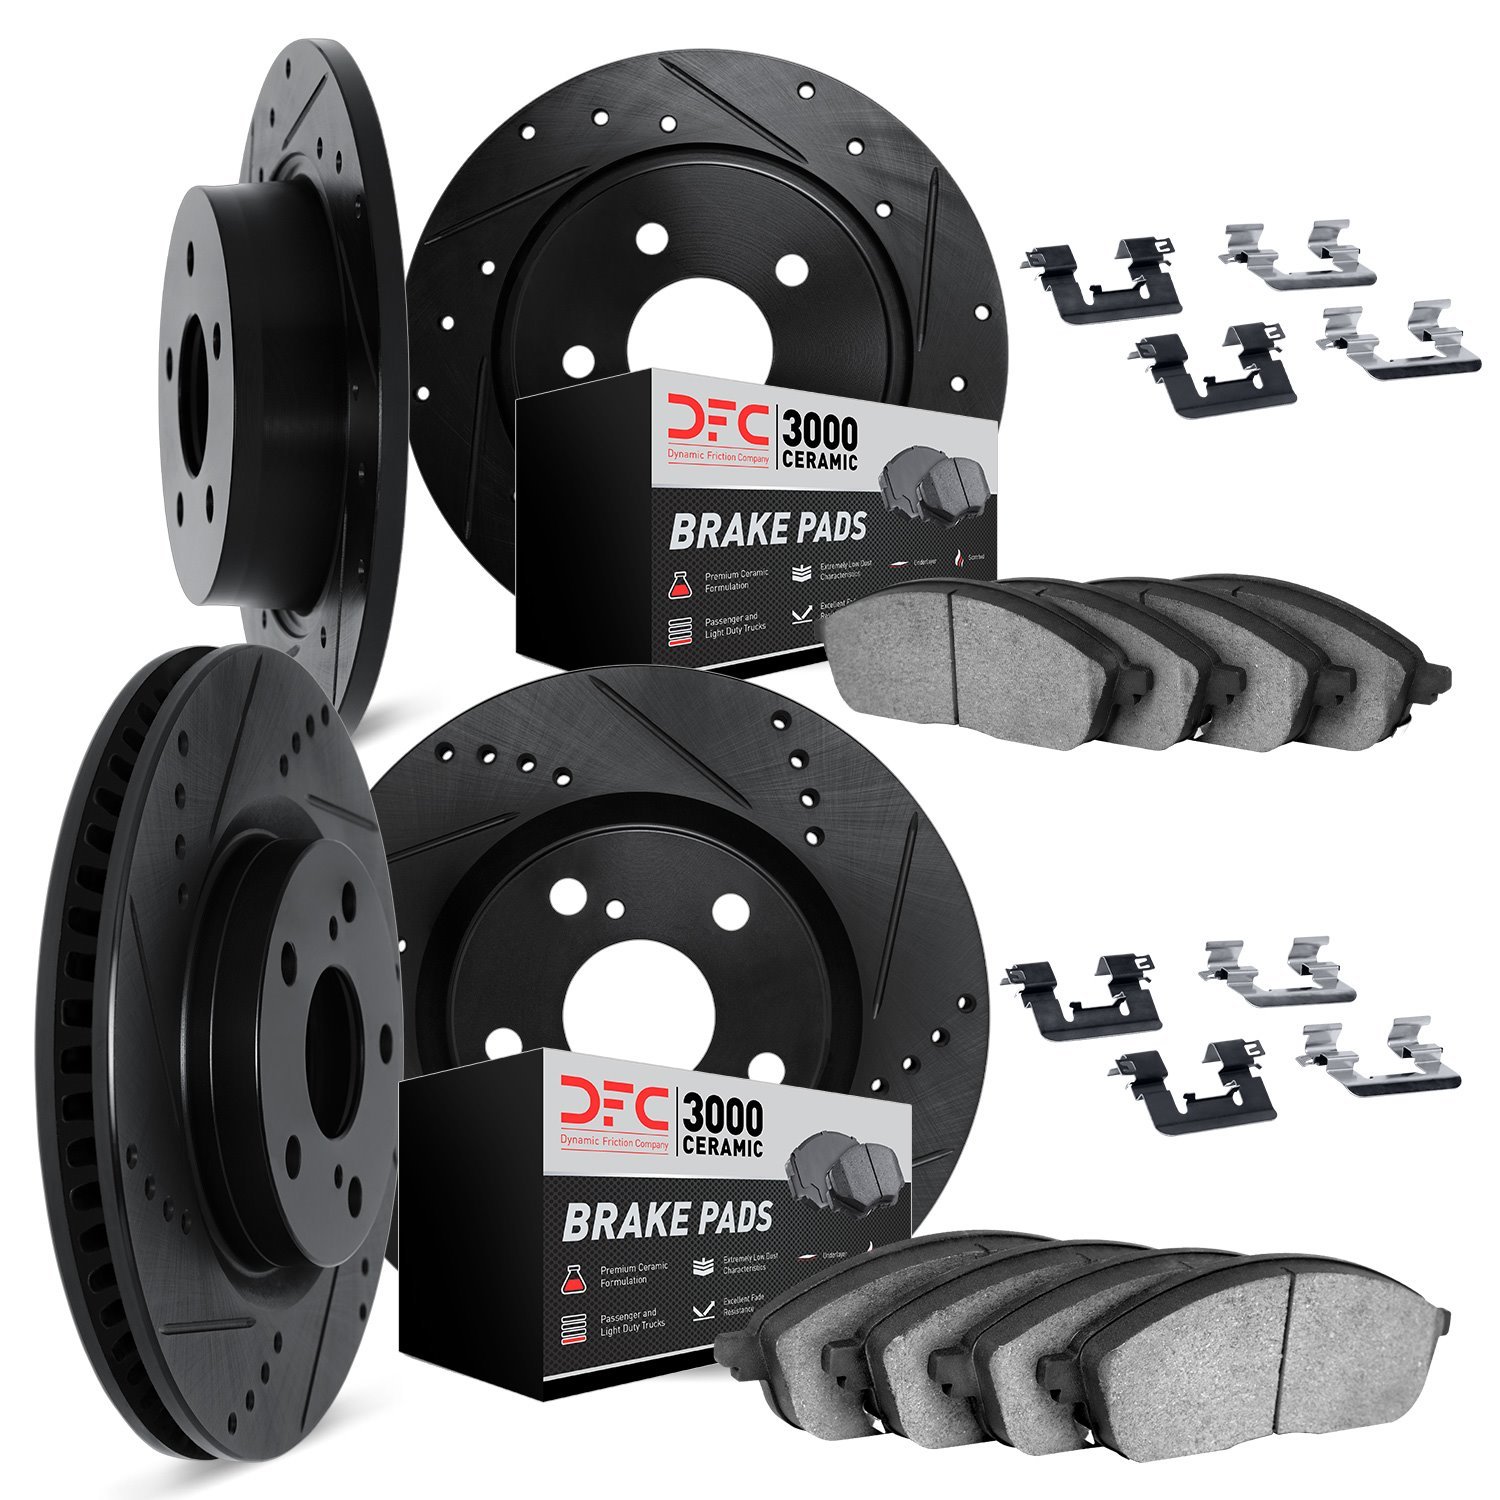 8314-76076 Drilled/Slotted Brake Rotors with 3000-Series Ceramic Brake Pads Kit & Hardware [Black], 2010-2015 Lexus/Toyota/Scion